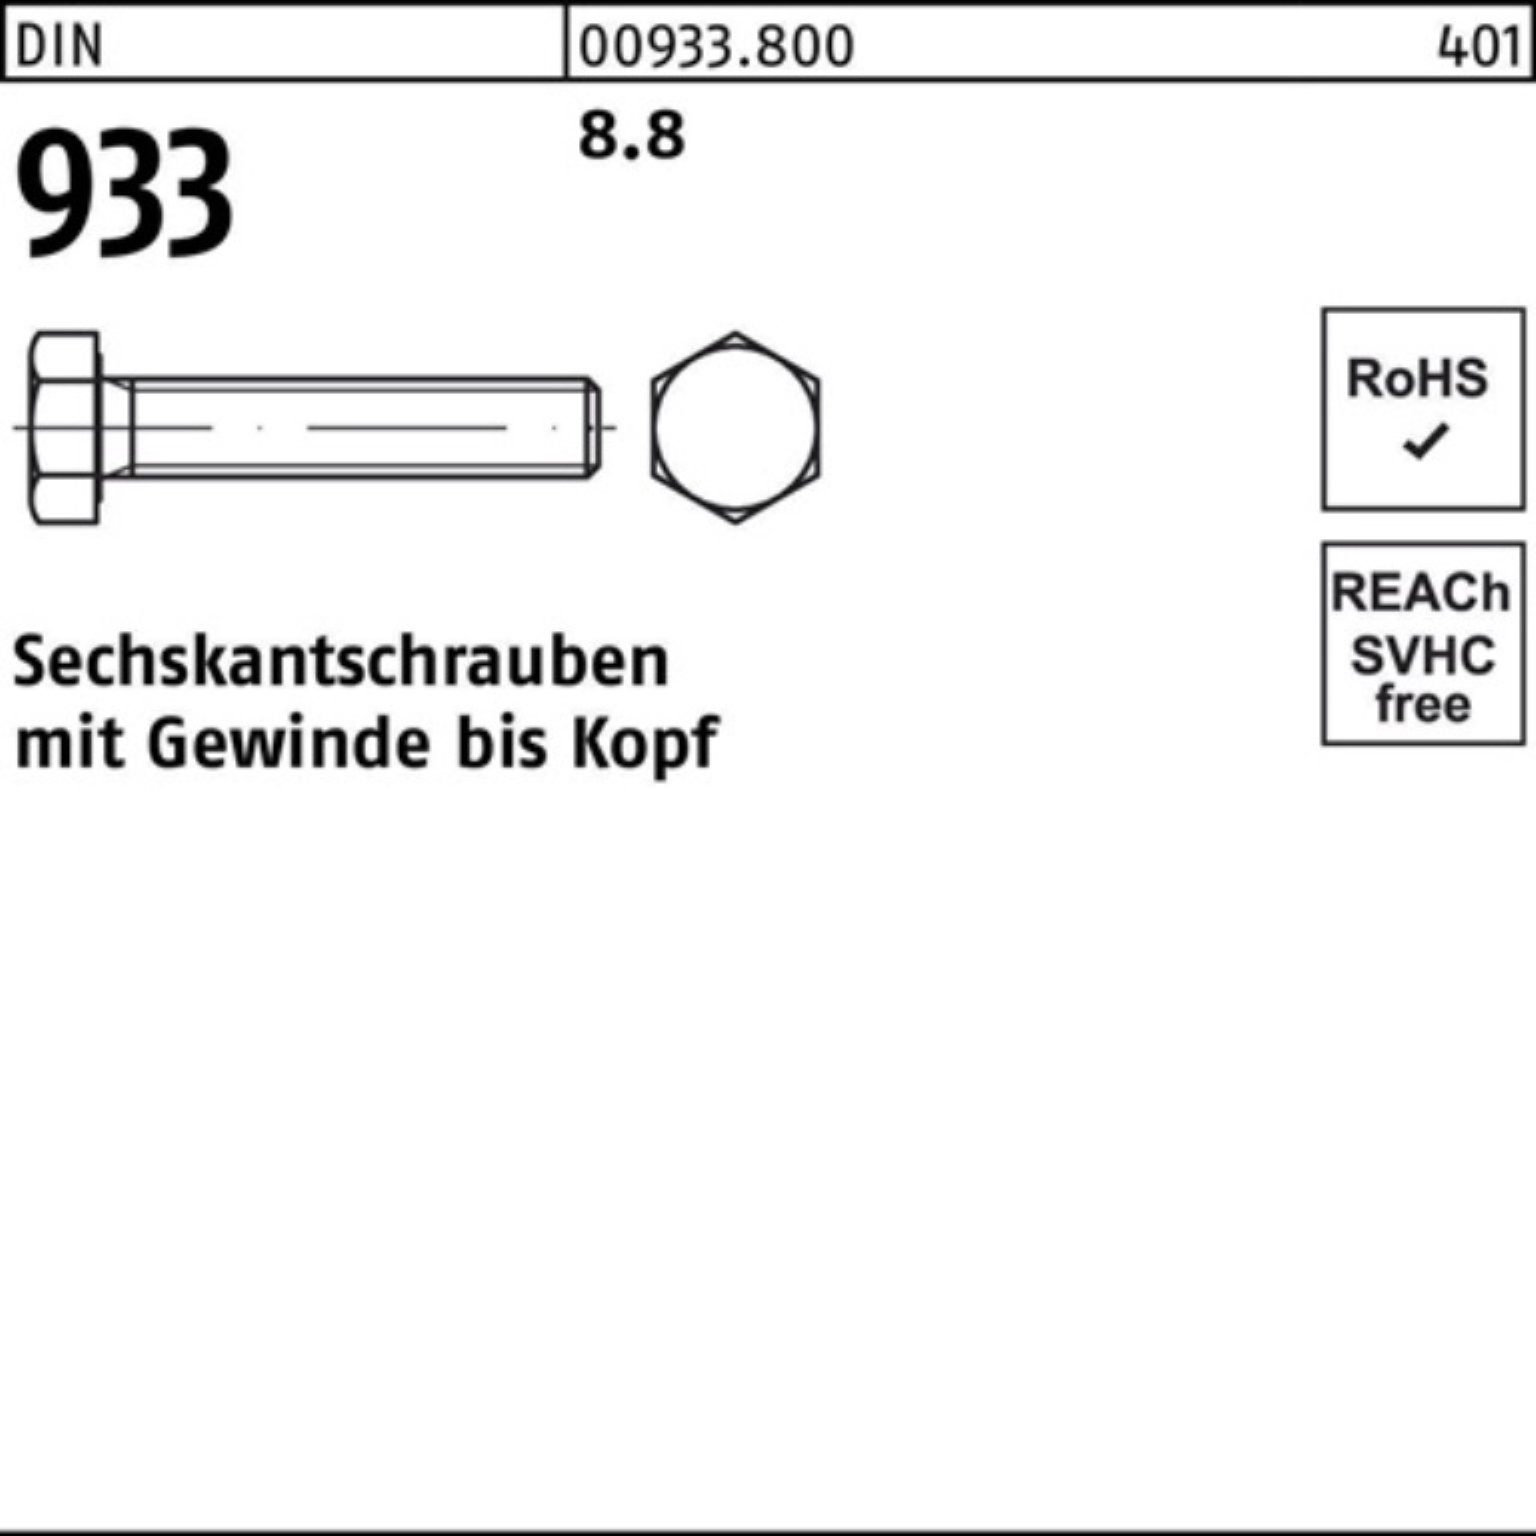 8.8 100er 50 DIN Sechskantschraube VG 50 Reyher Stück 933 M18x DIN Pack Sechskantschraube 933